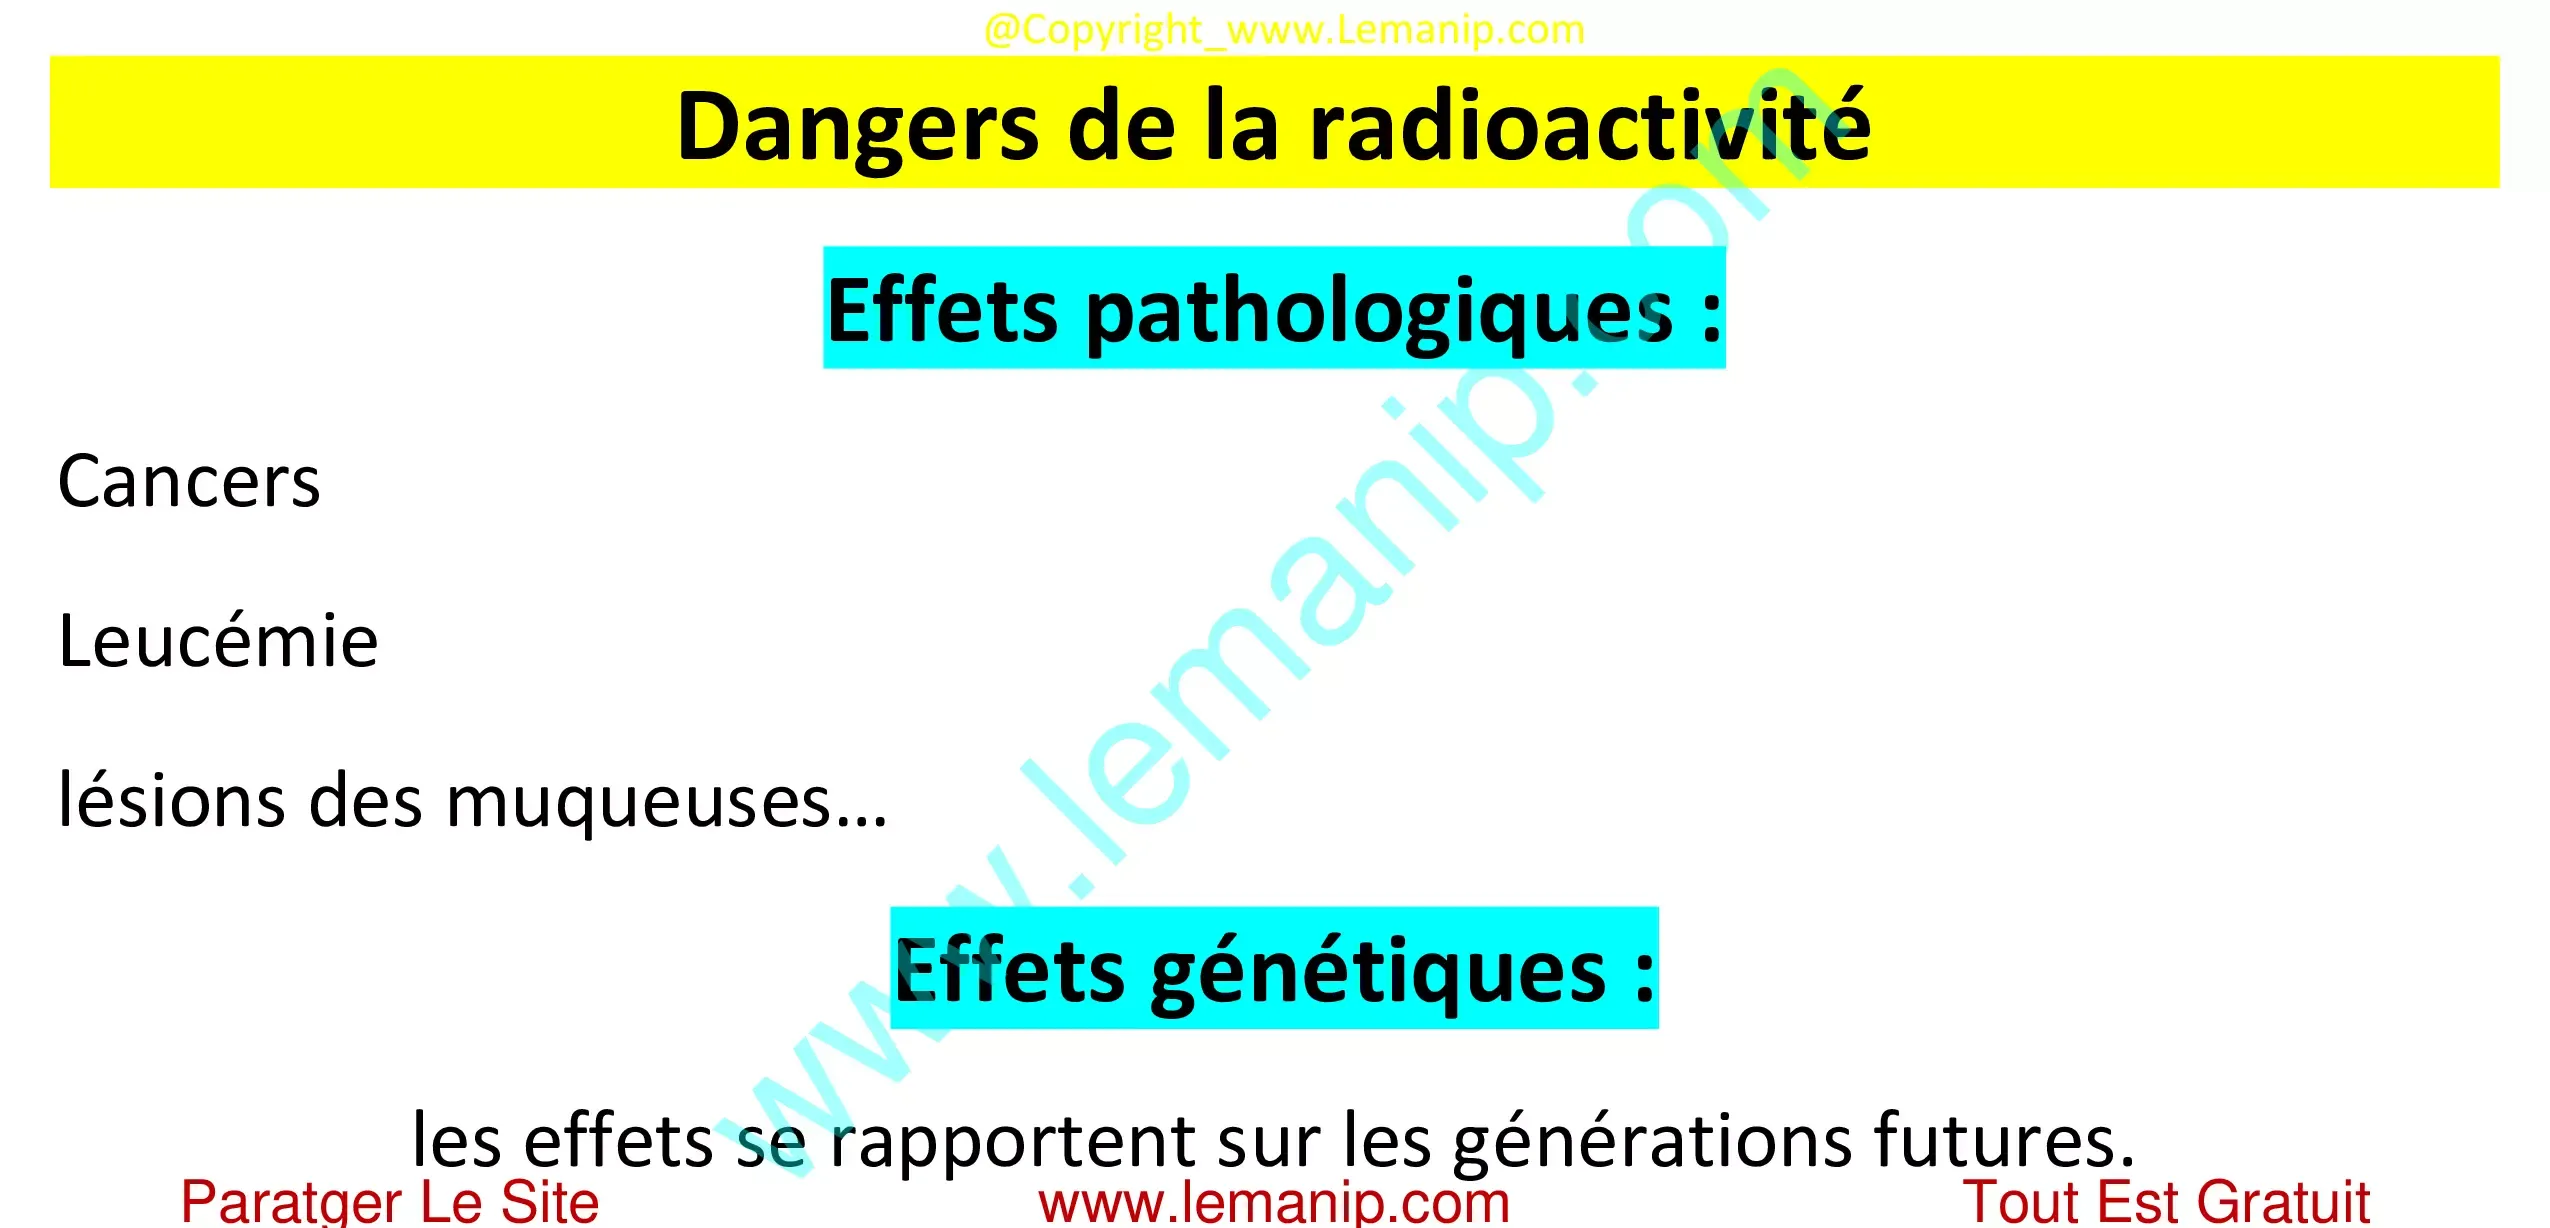 Dangers de la radioactivité